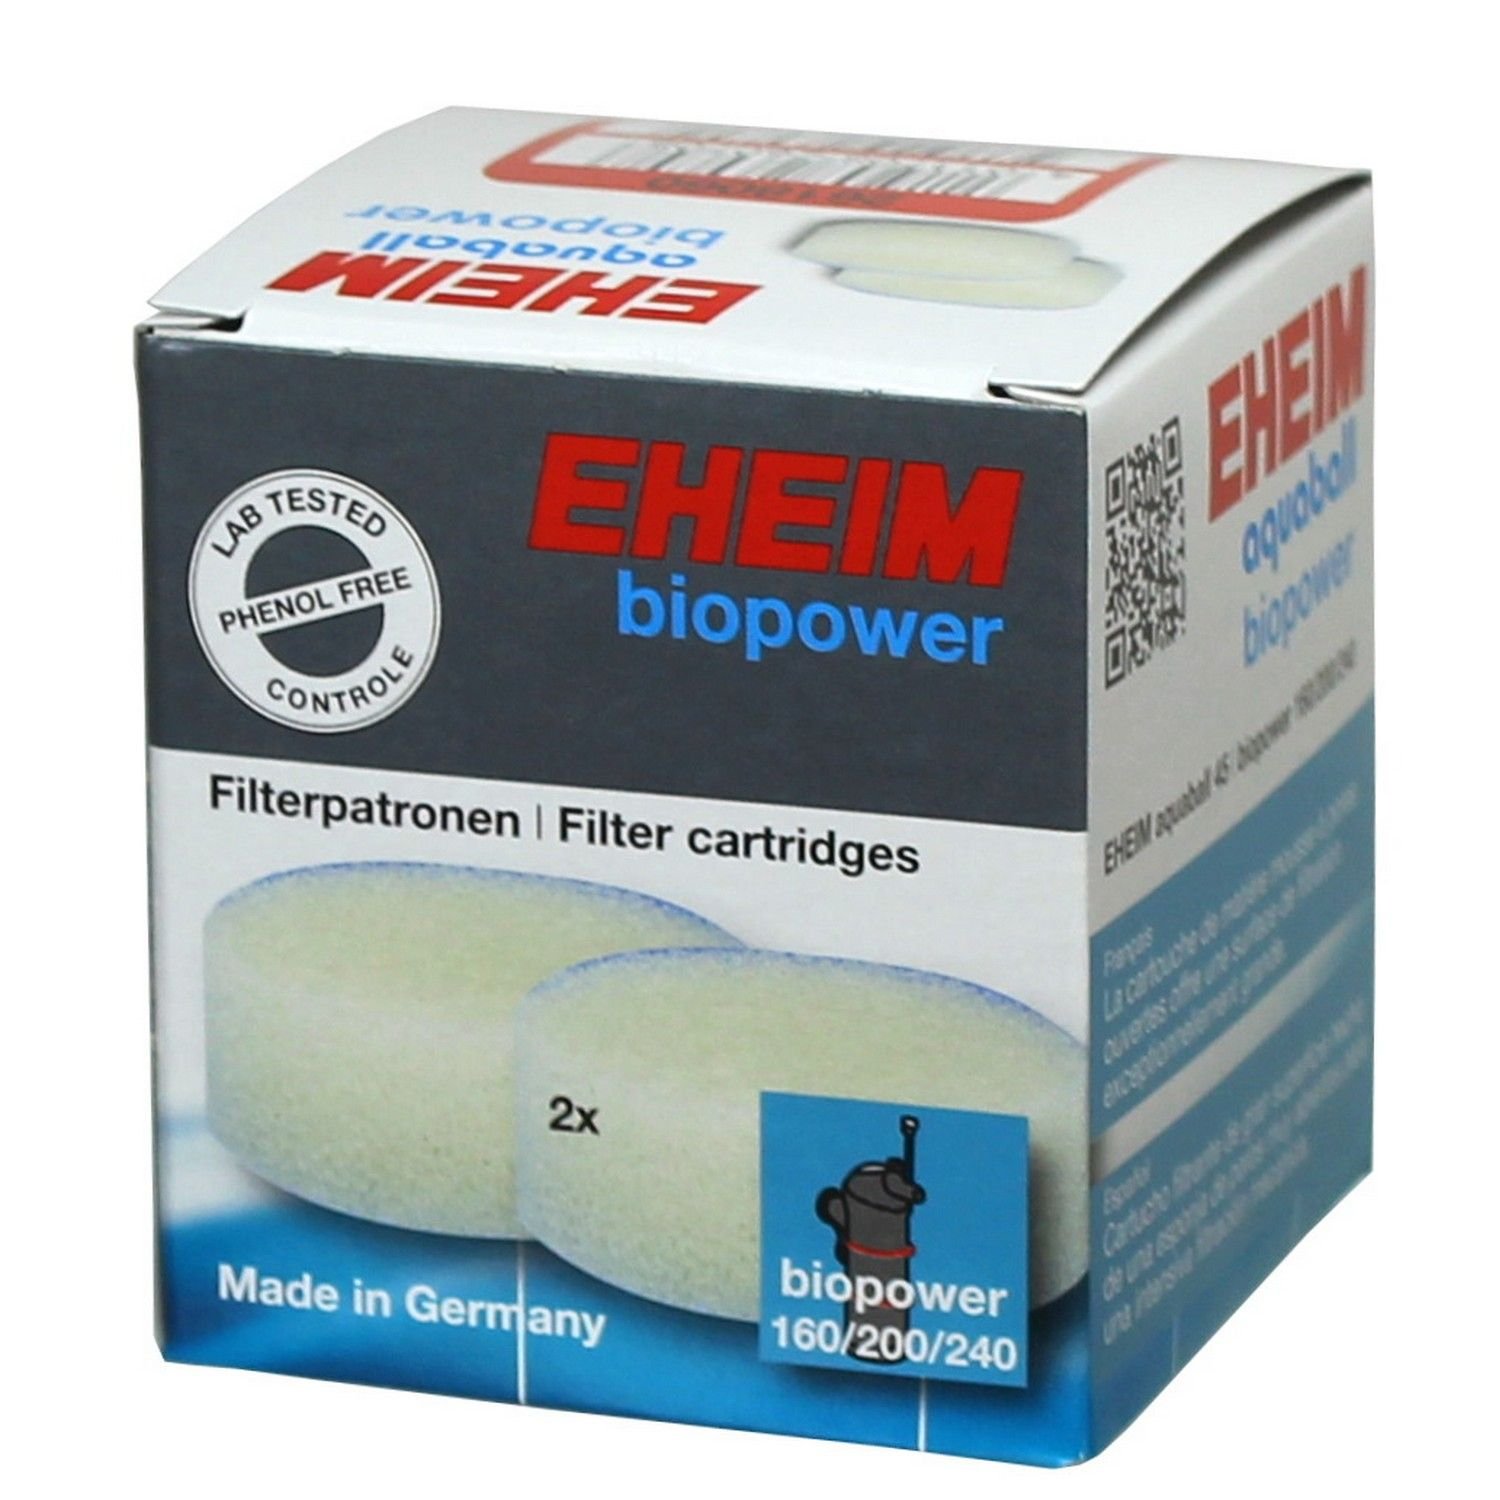 Картридж для Eheim biopower 160-240 (2618060) фильтрующий верхний